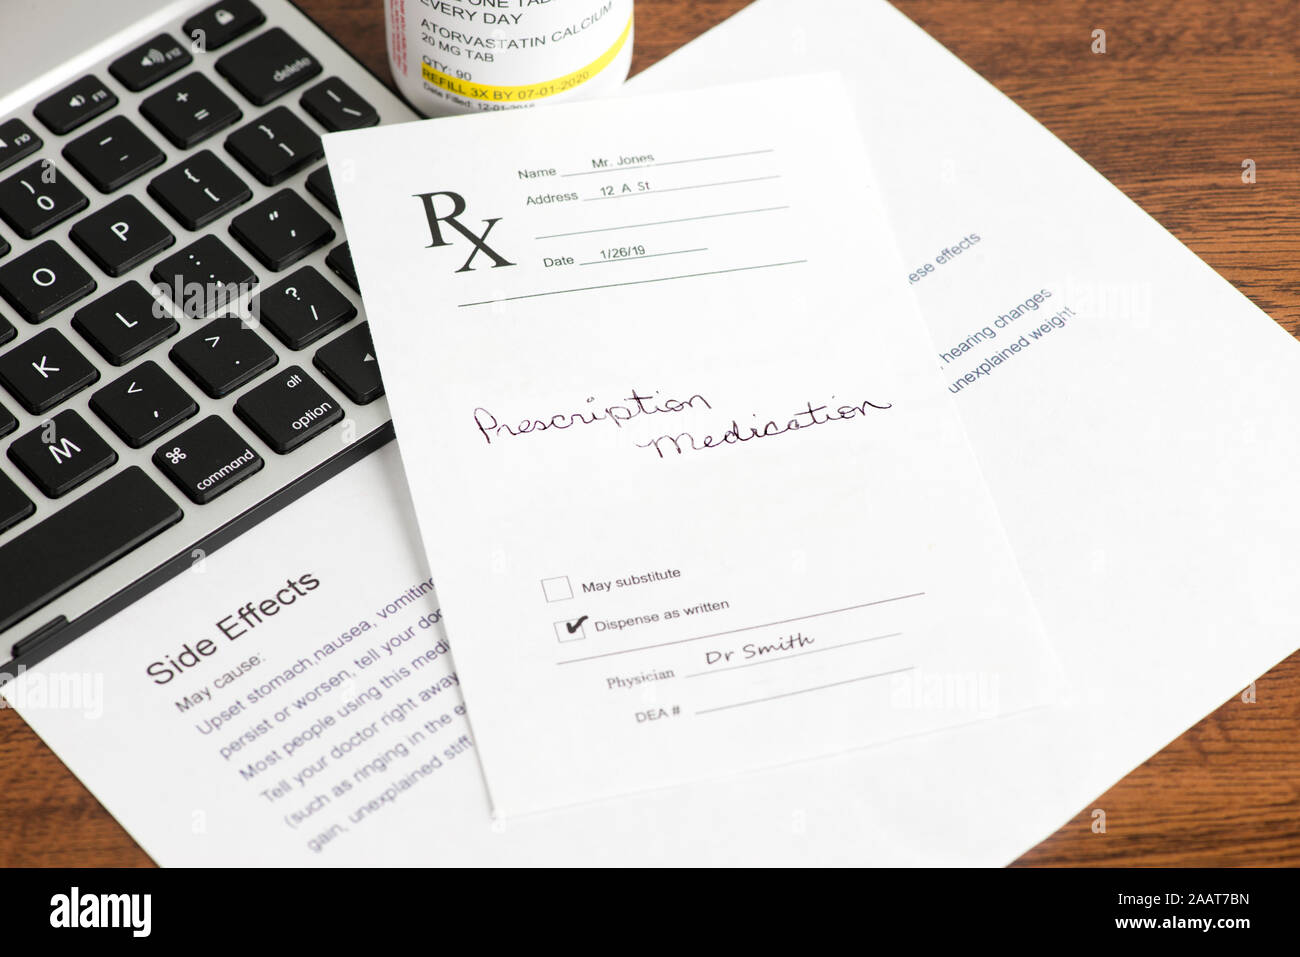 La prescrizione di medicinali con prescrizione medico, contenitore e gli effetti collaterali foglio di informazioni personali con la tastiera del computer. Foto Stock